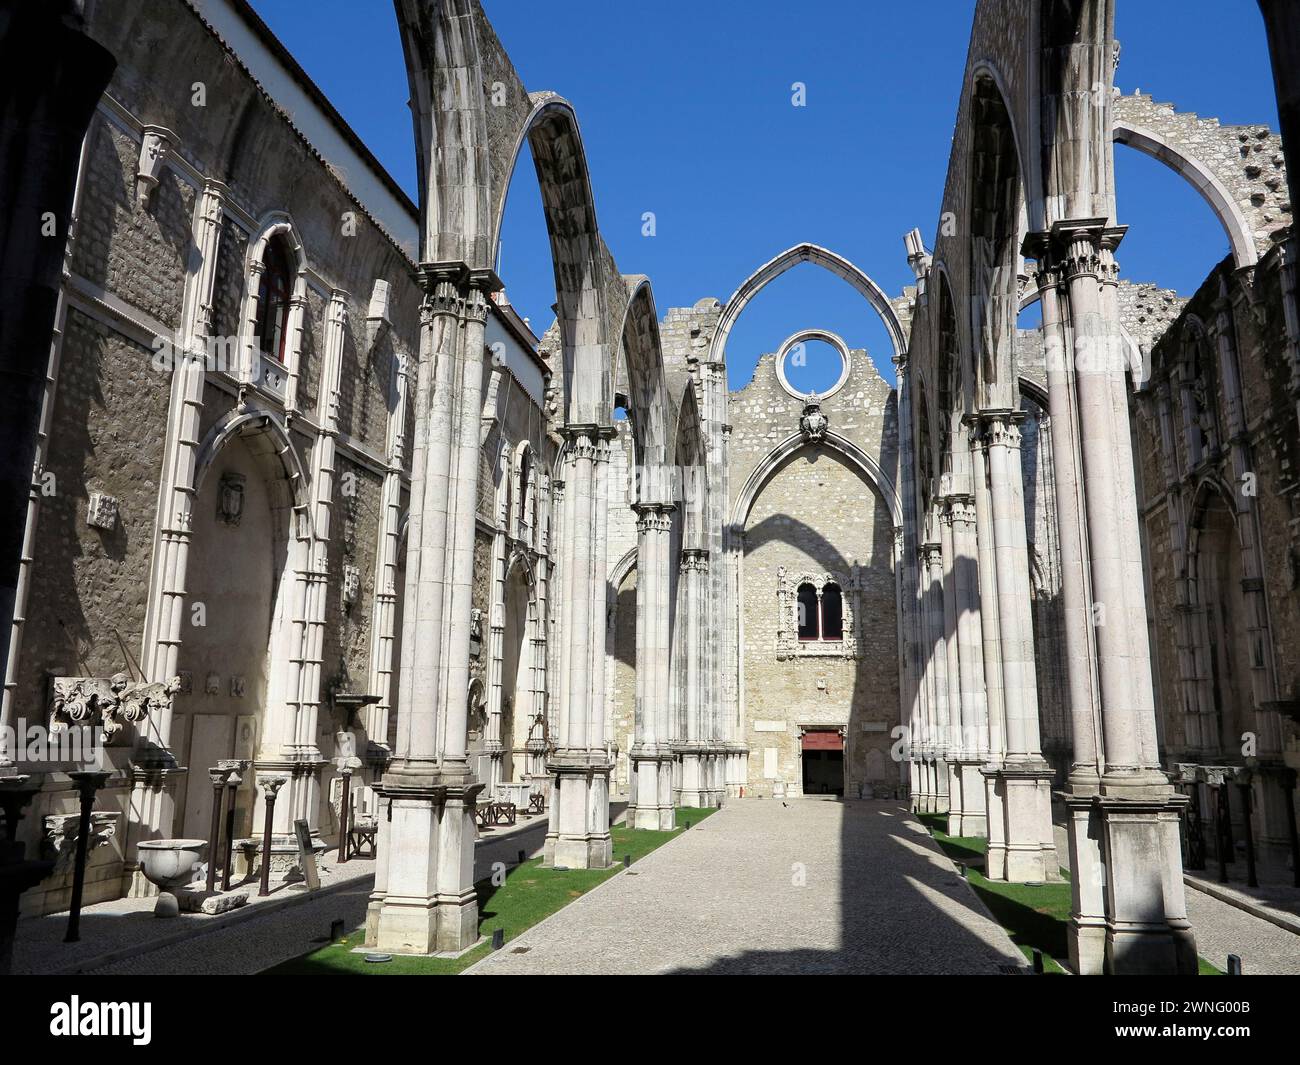 Ruines de l'église gothique du couvent Carmo du XIVe-XVe siècle à Lisbonne, Portugal. Endommagé par le tremblement de terre de 1755. Banque D'Images